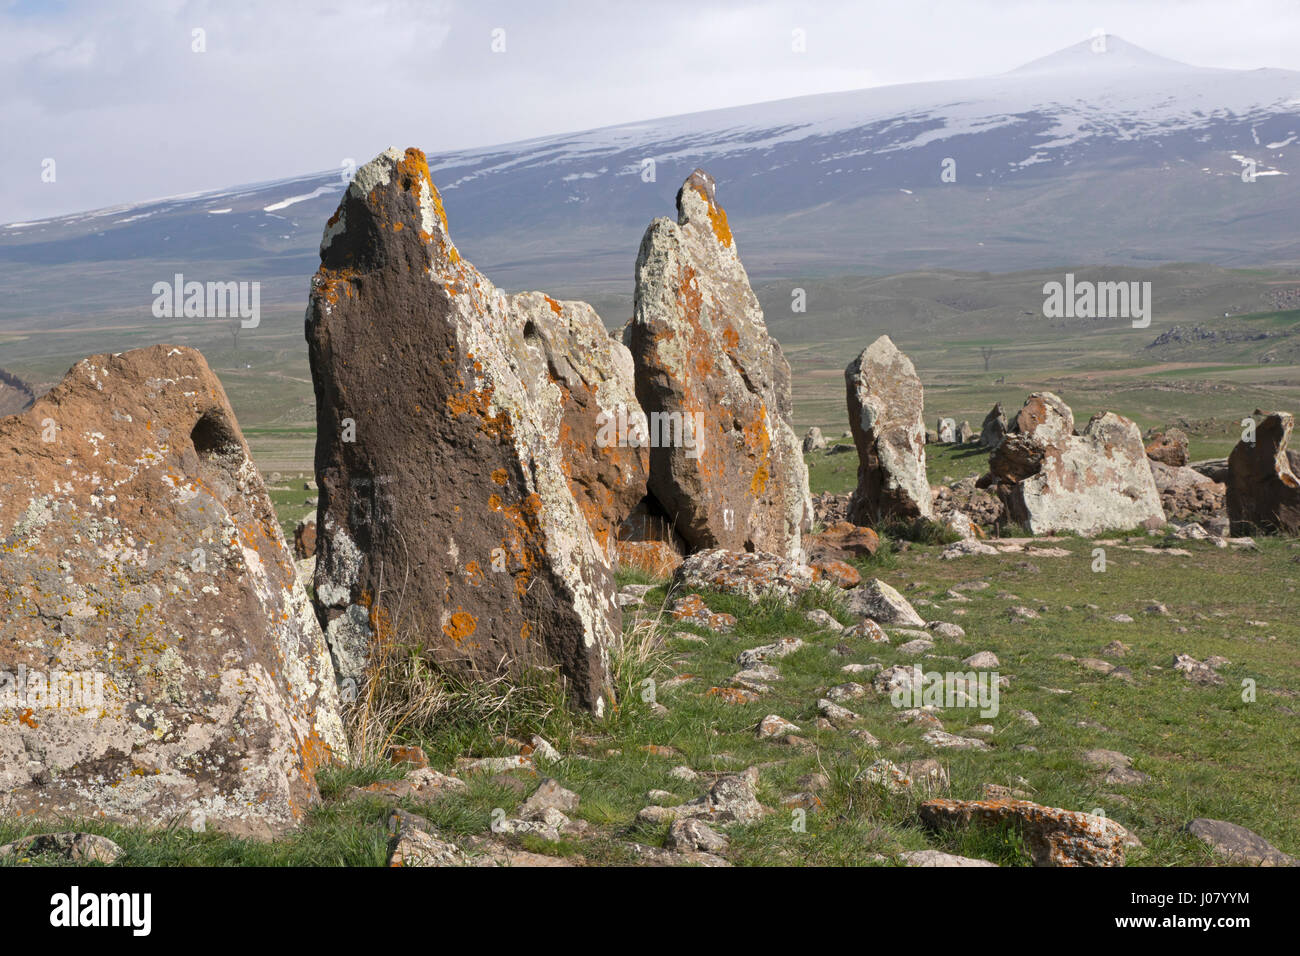 Stonehenge arménien, Carahunge Stone Circle, est de 7500 ans site mégalithique d'observation astronomique. Banque D'Images